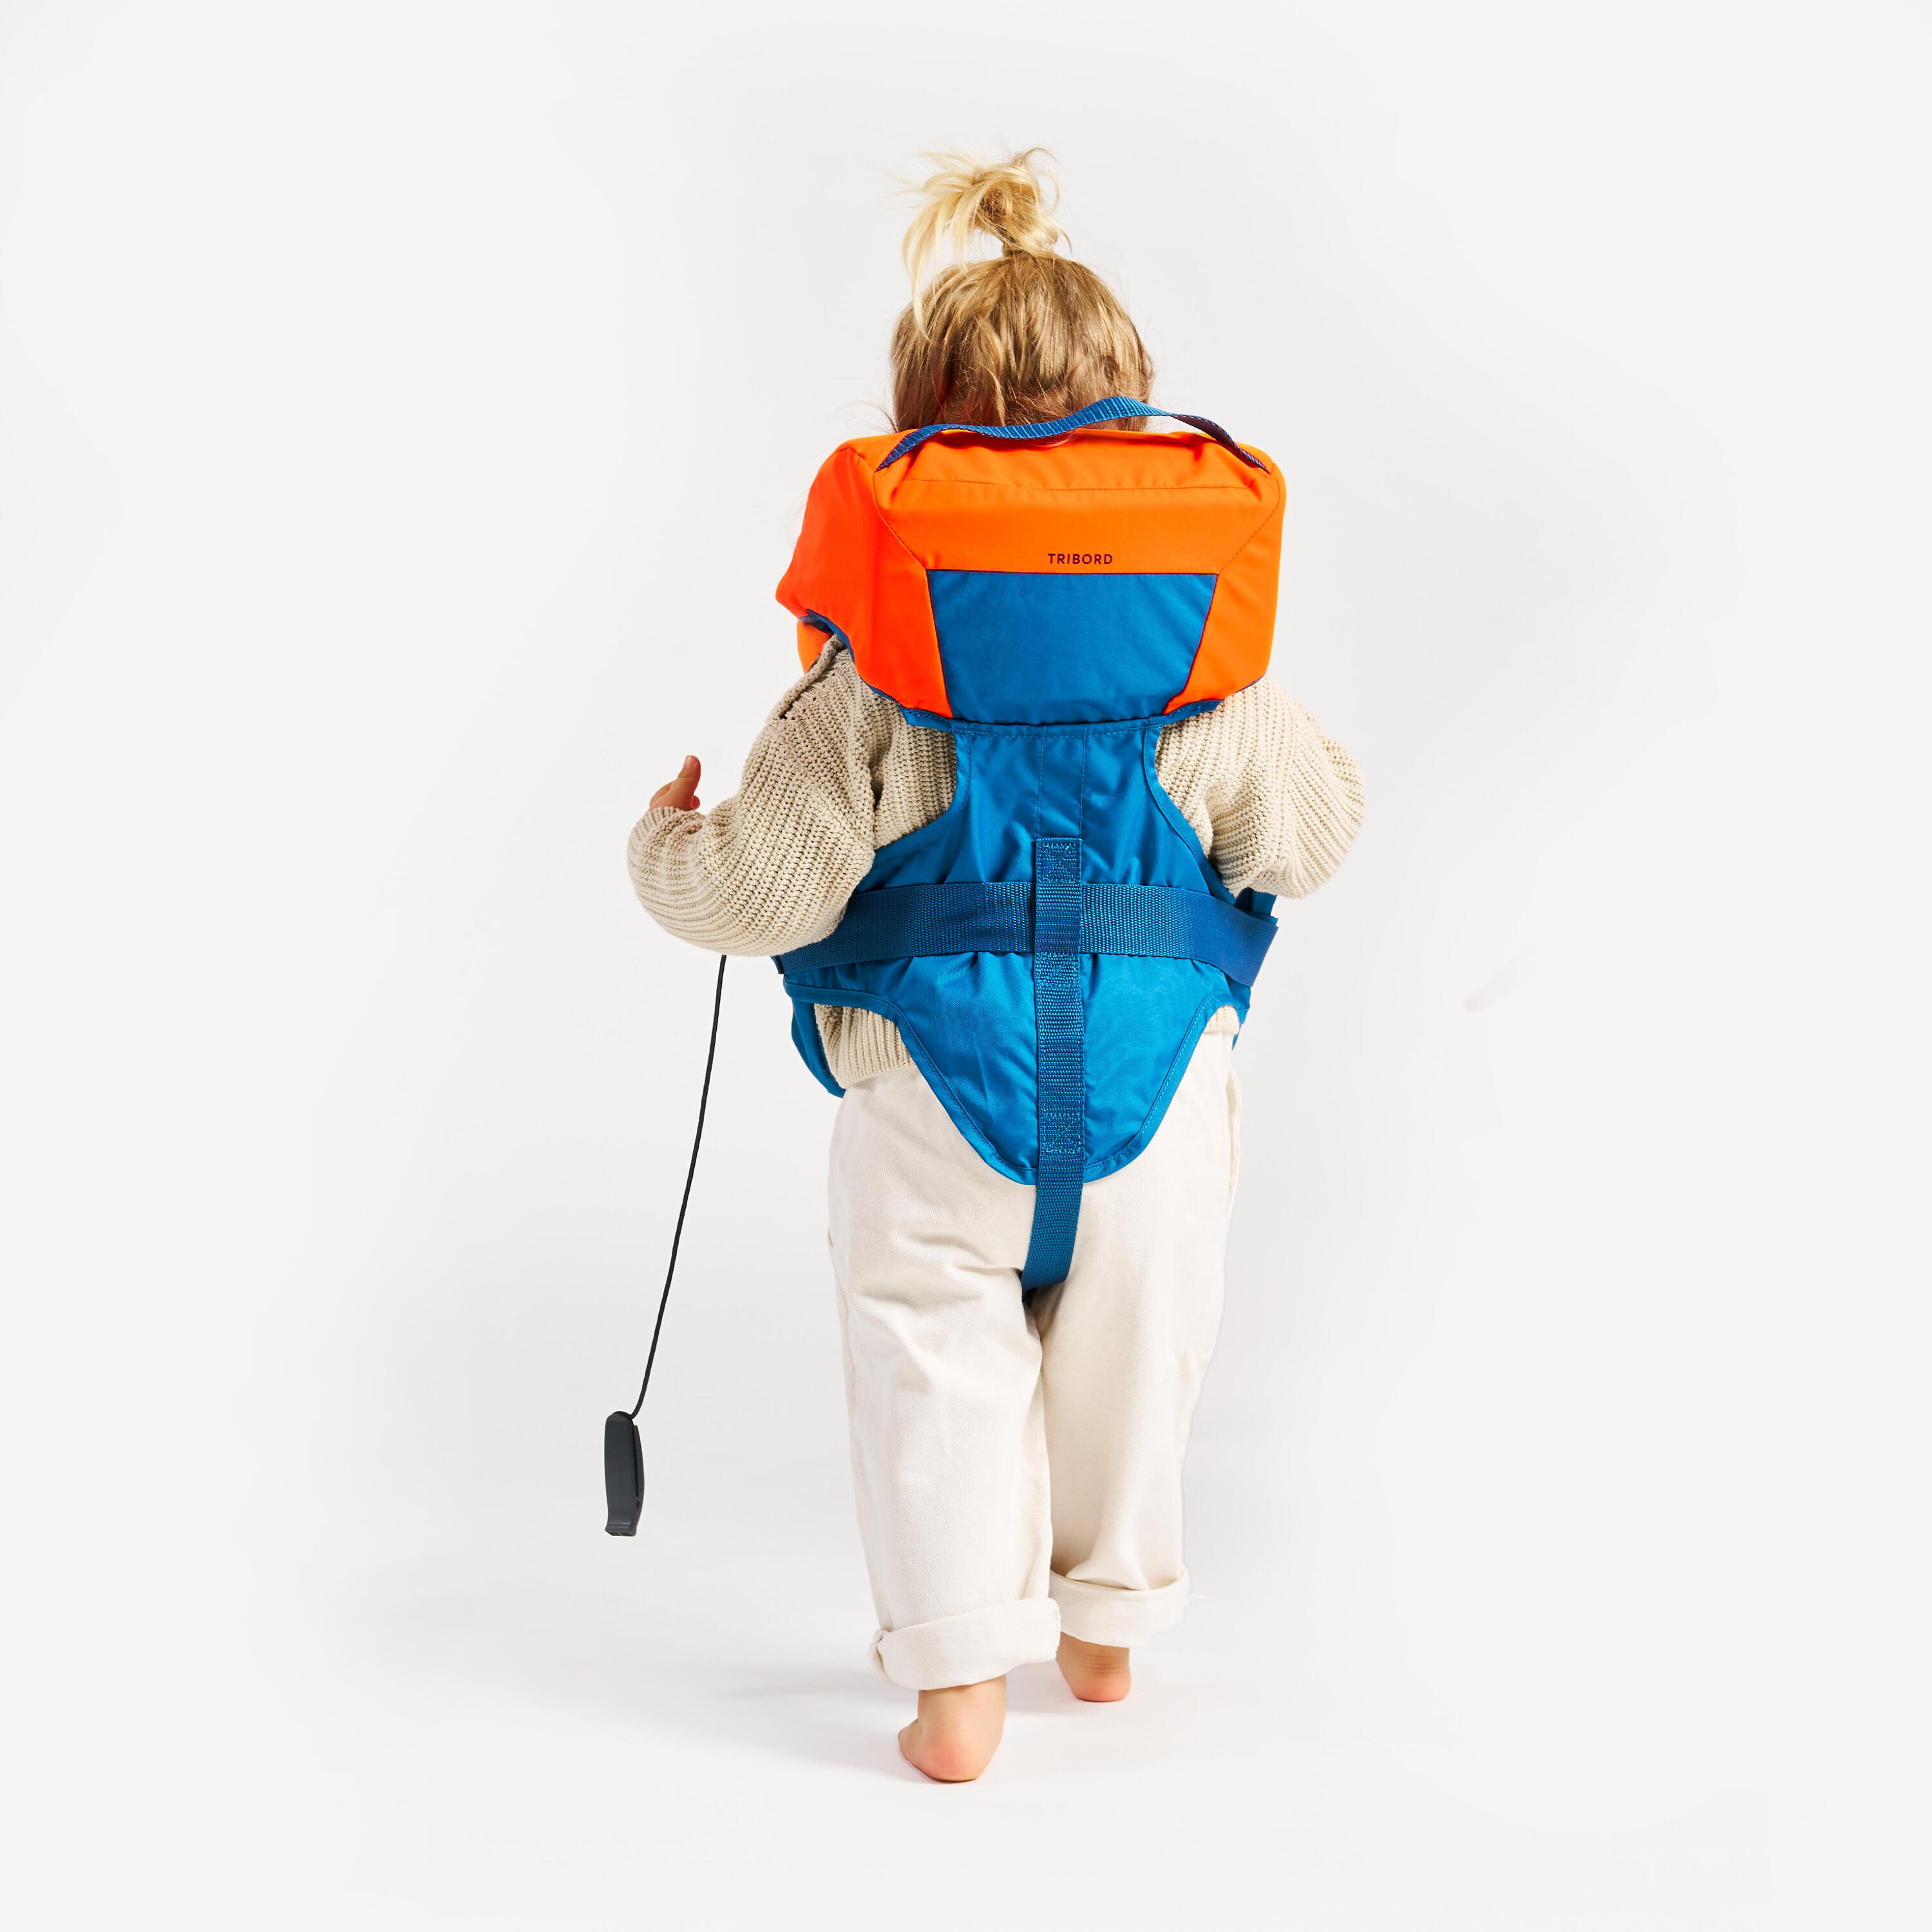 LJ100N easy baby life jacket for babies and infants 10-15 kg orange blue 6/15